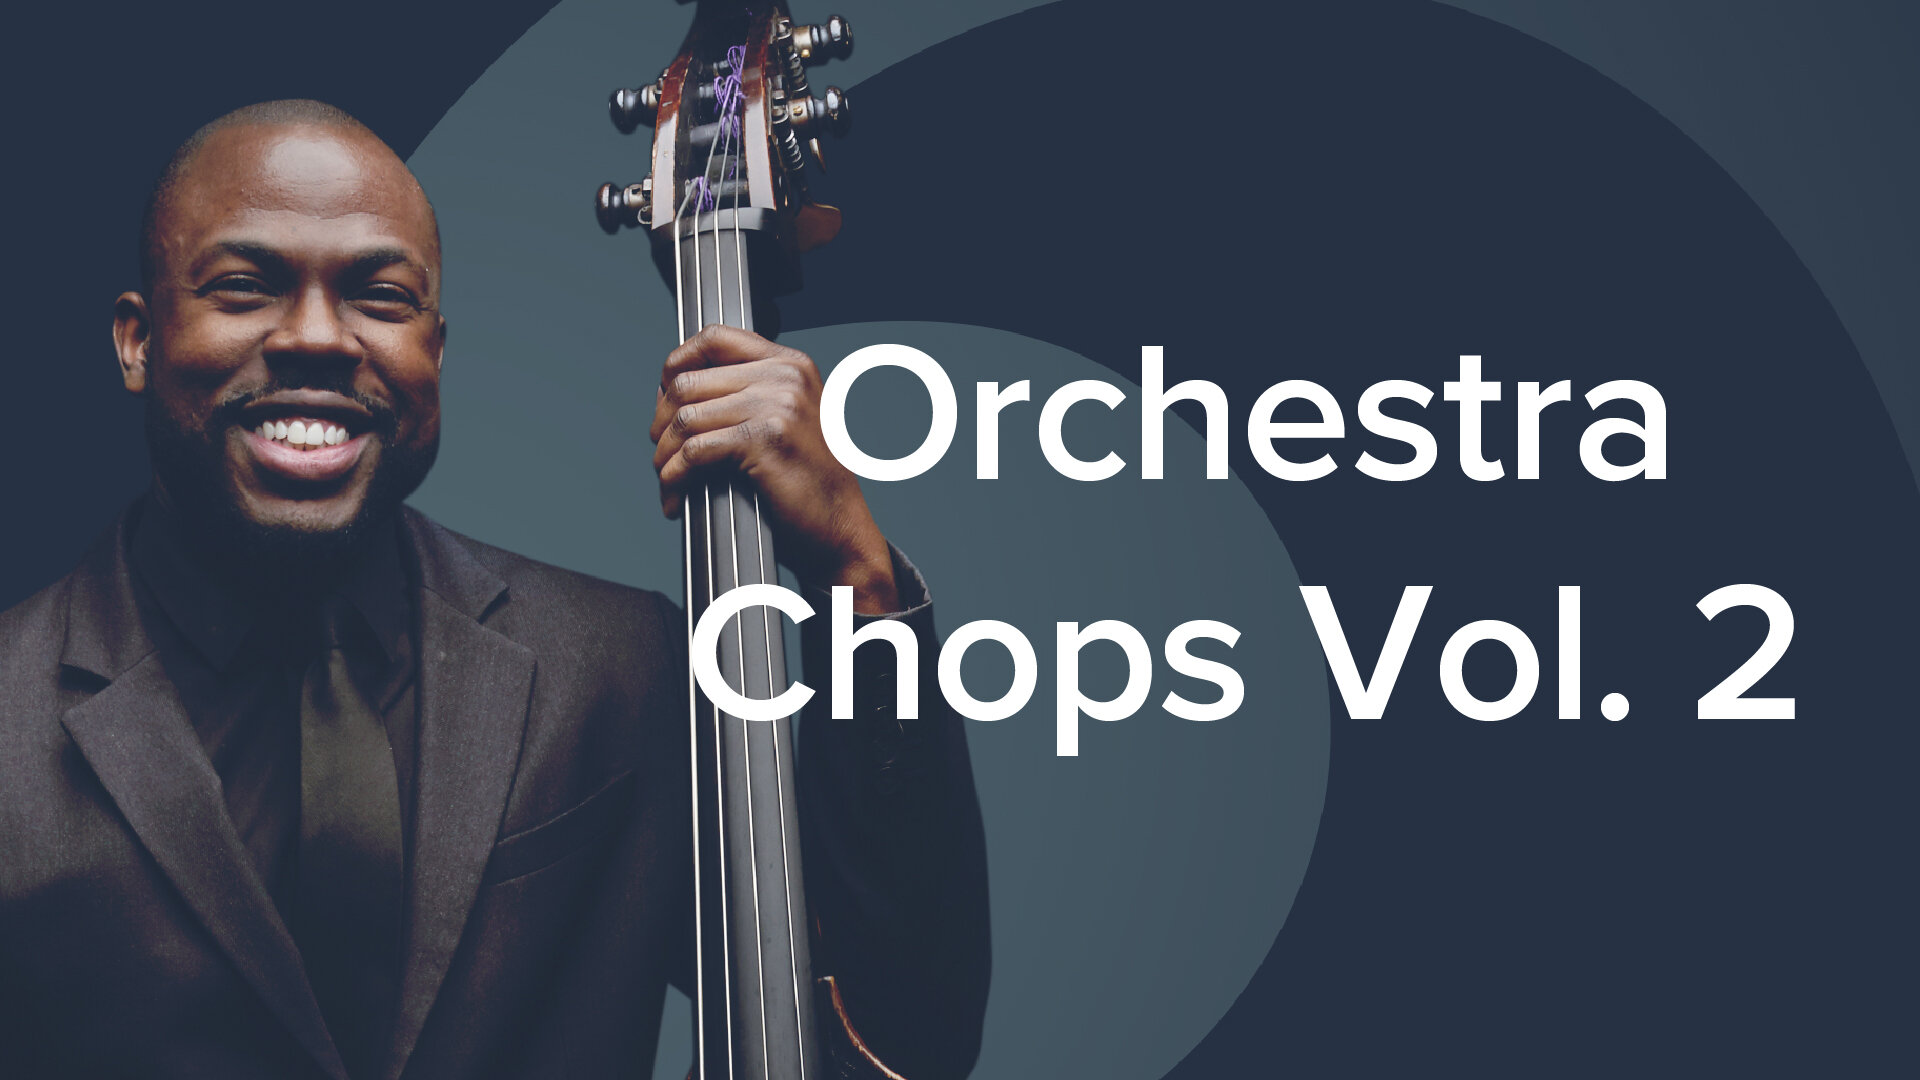 Orchestra Chops Vol. 2